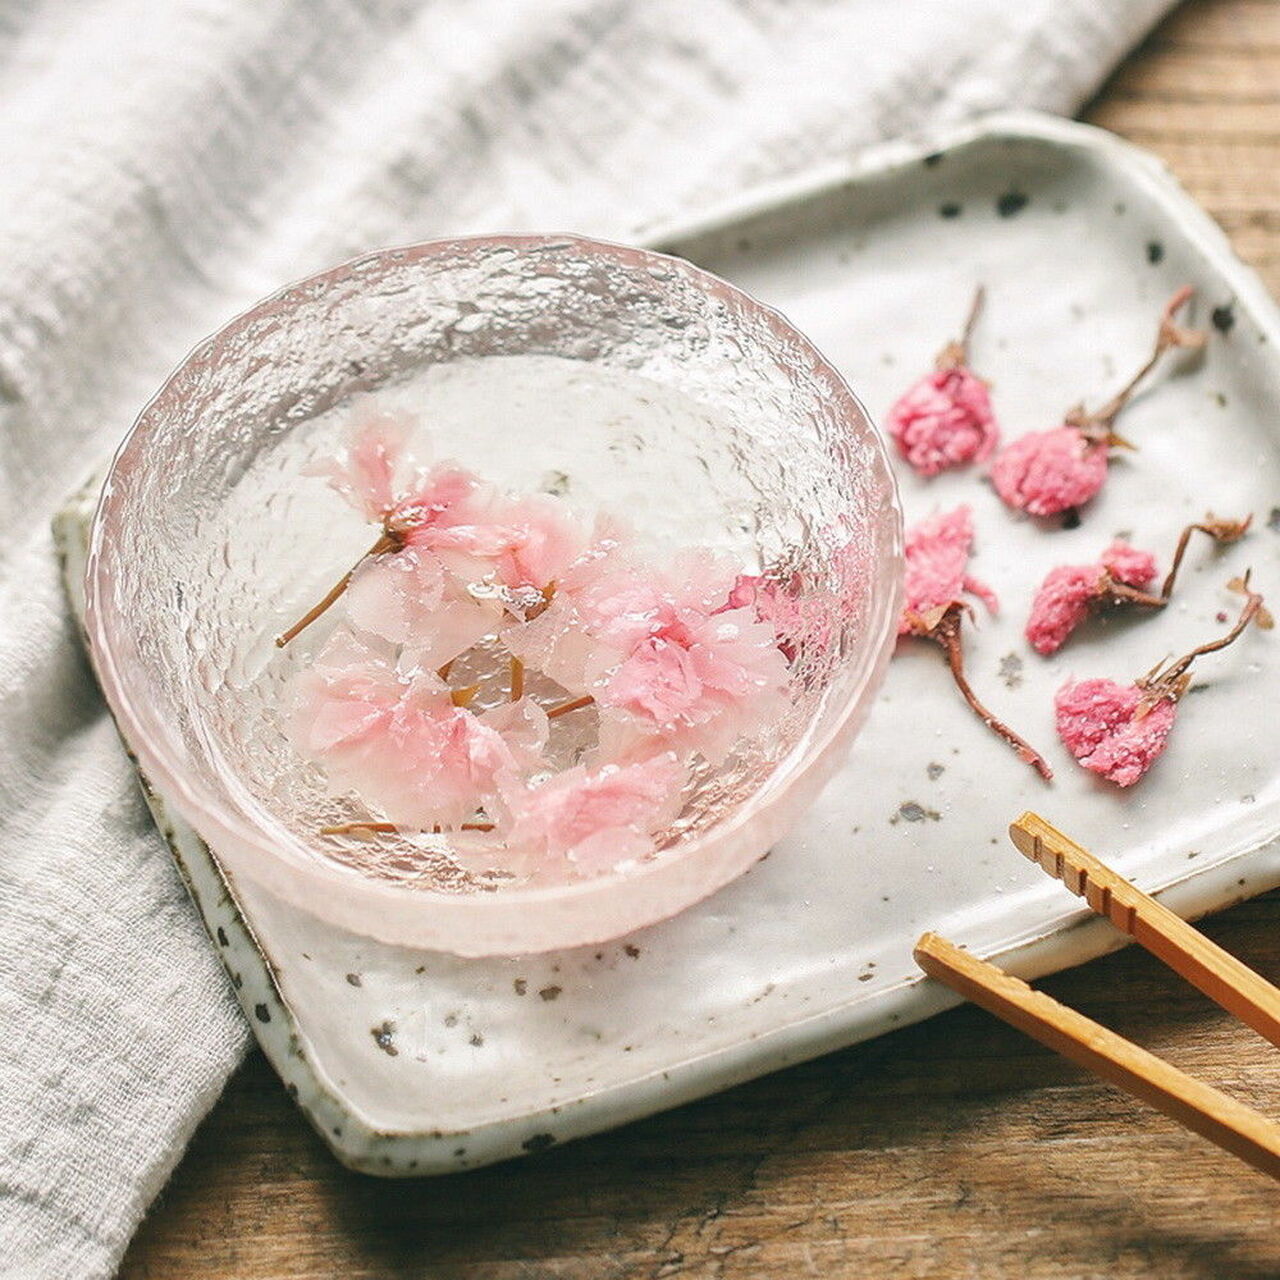 7 món ăn làm từ hoa anh đào vừa ngon vừa đẹp khi Nhật Bản vào mùa hoa - Ảnh 2